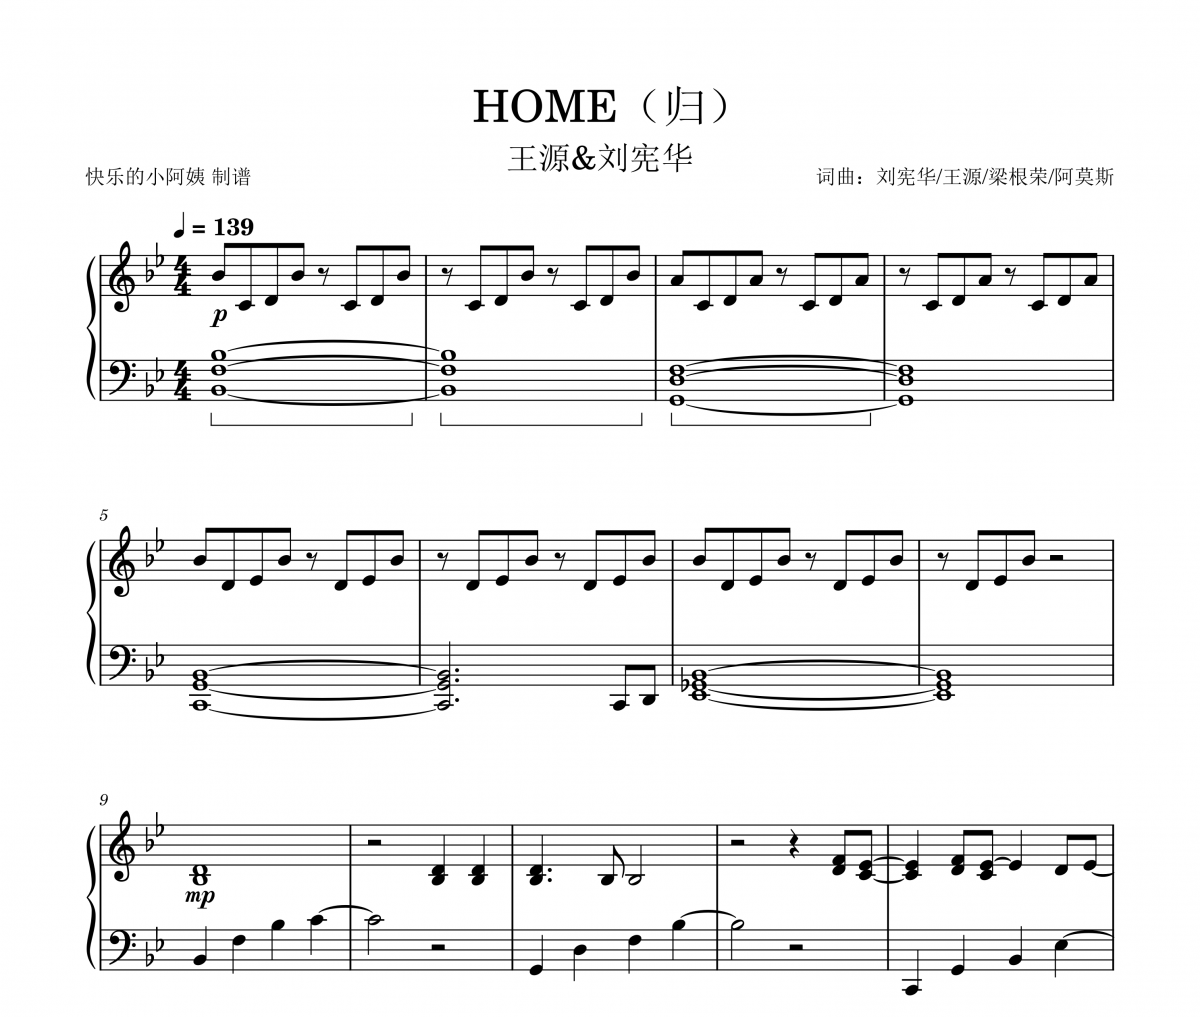 王源/刘宪华《HOME(归)》原调版钢琴谱五线谱